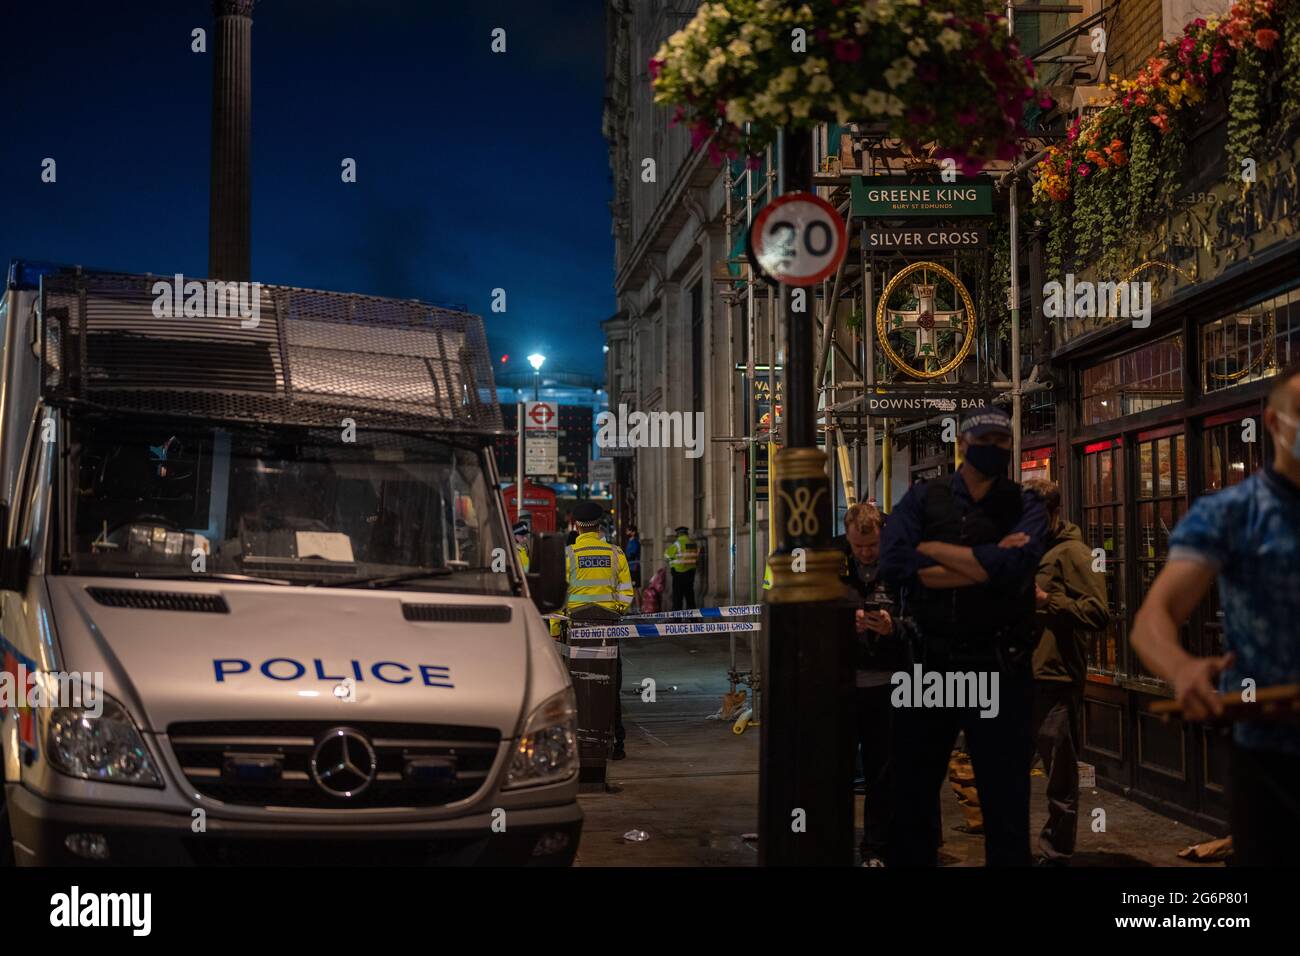 Londres, Royaume-Uni. 7 juillet 2021. Incident de police à l'extérieur de la Croix d'argent sur Whitehall, le cordon de police s'est installé autour de la région. Credit: Thomas Eddy/Alay Live News Banque D'Images